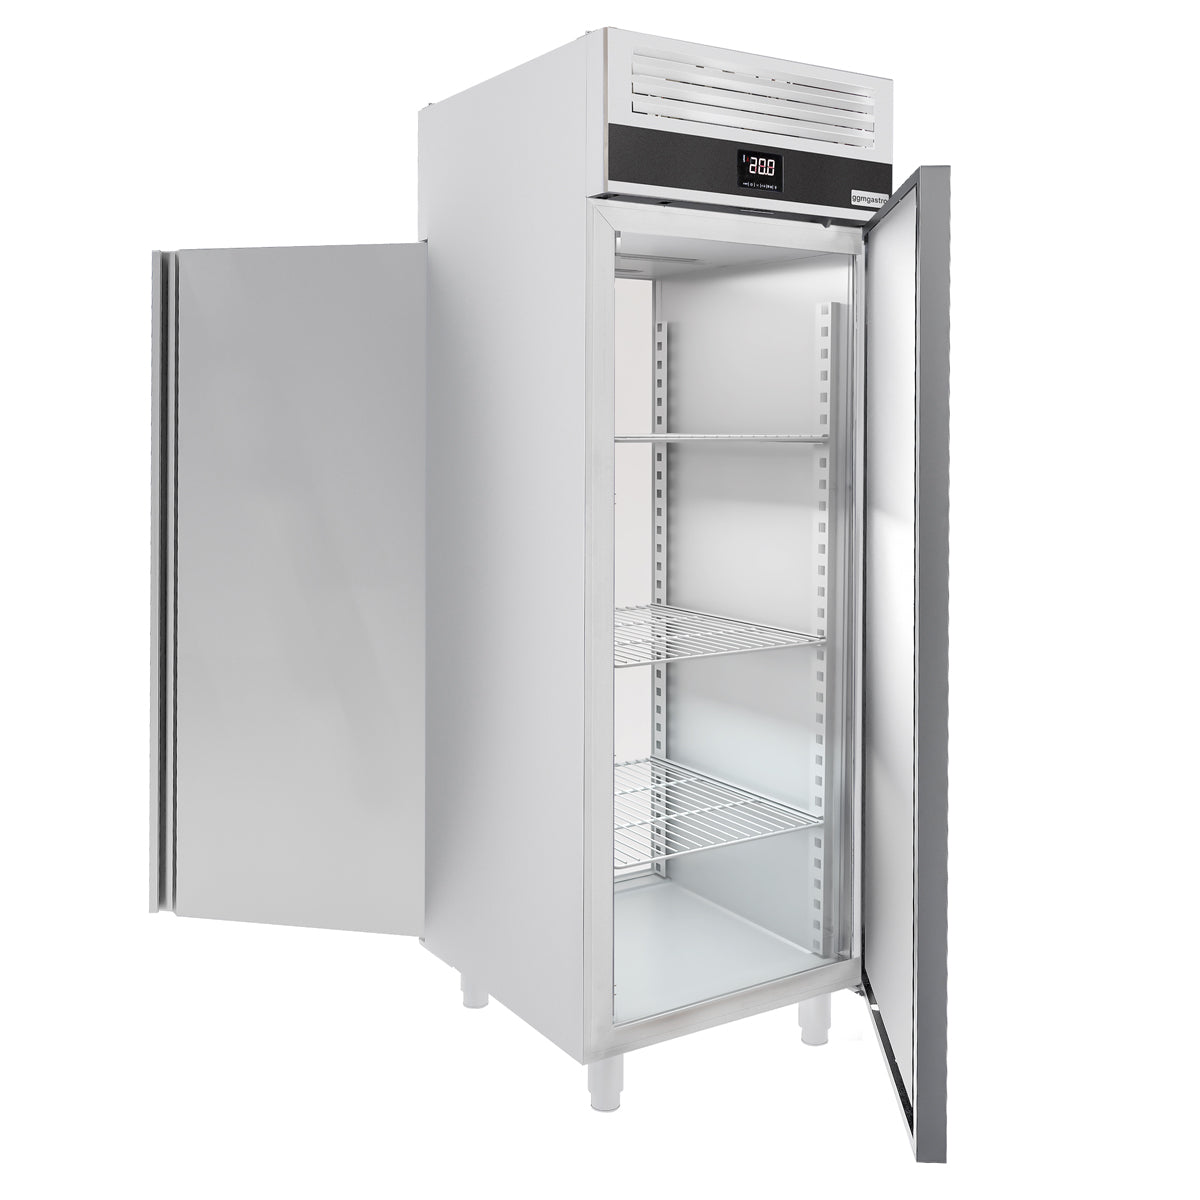 Хладилник - 0,7 х 0,81 м - 700 литра - с 1 входна врата и 1 задна врата